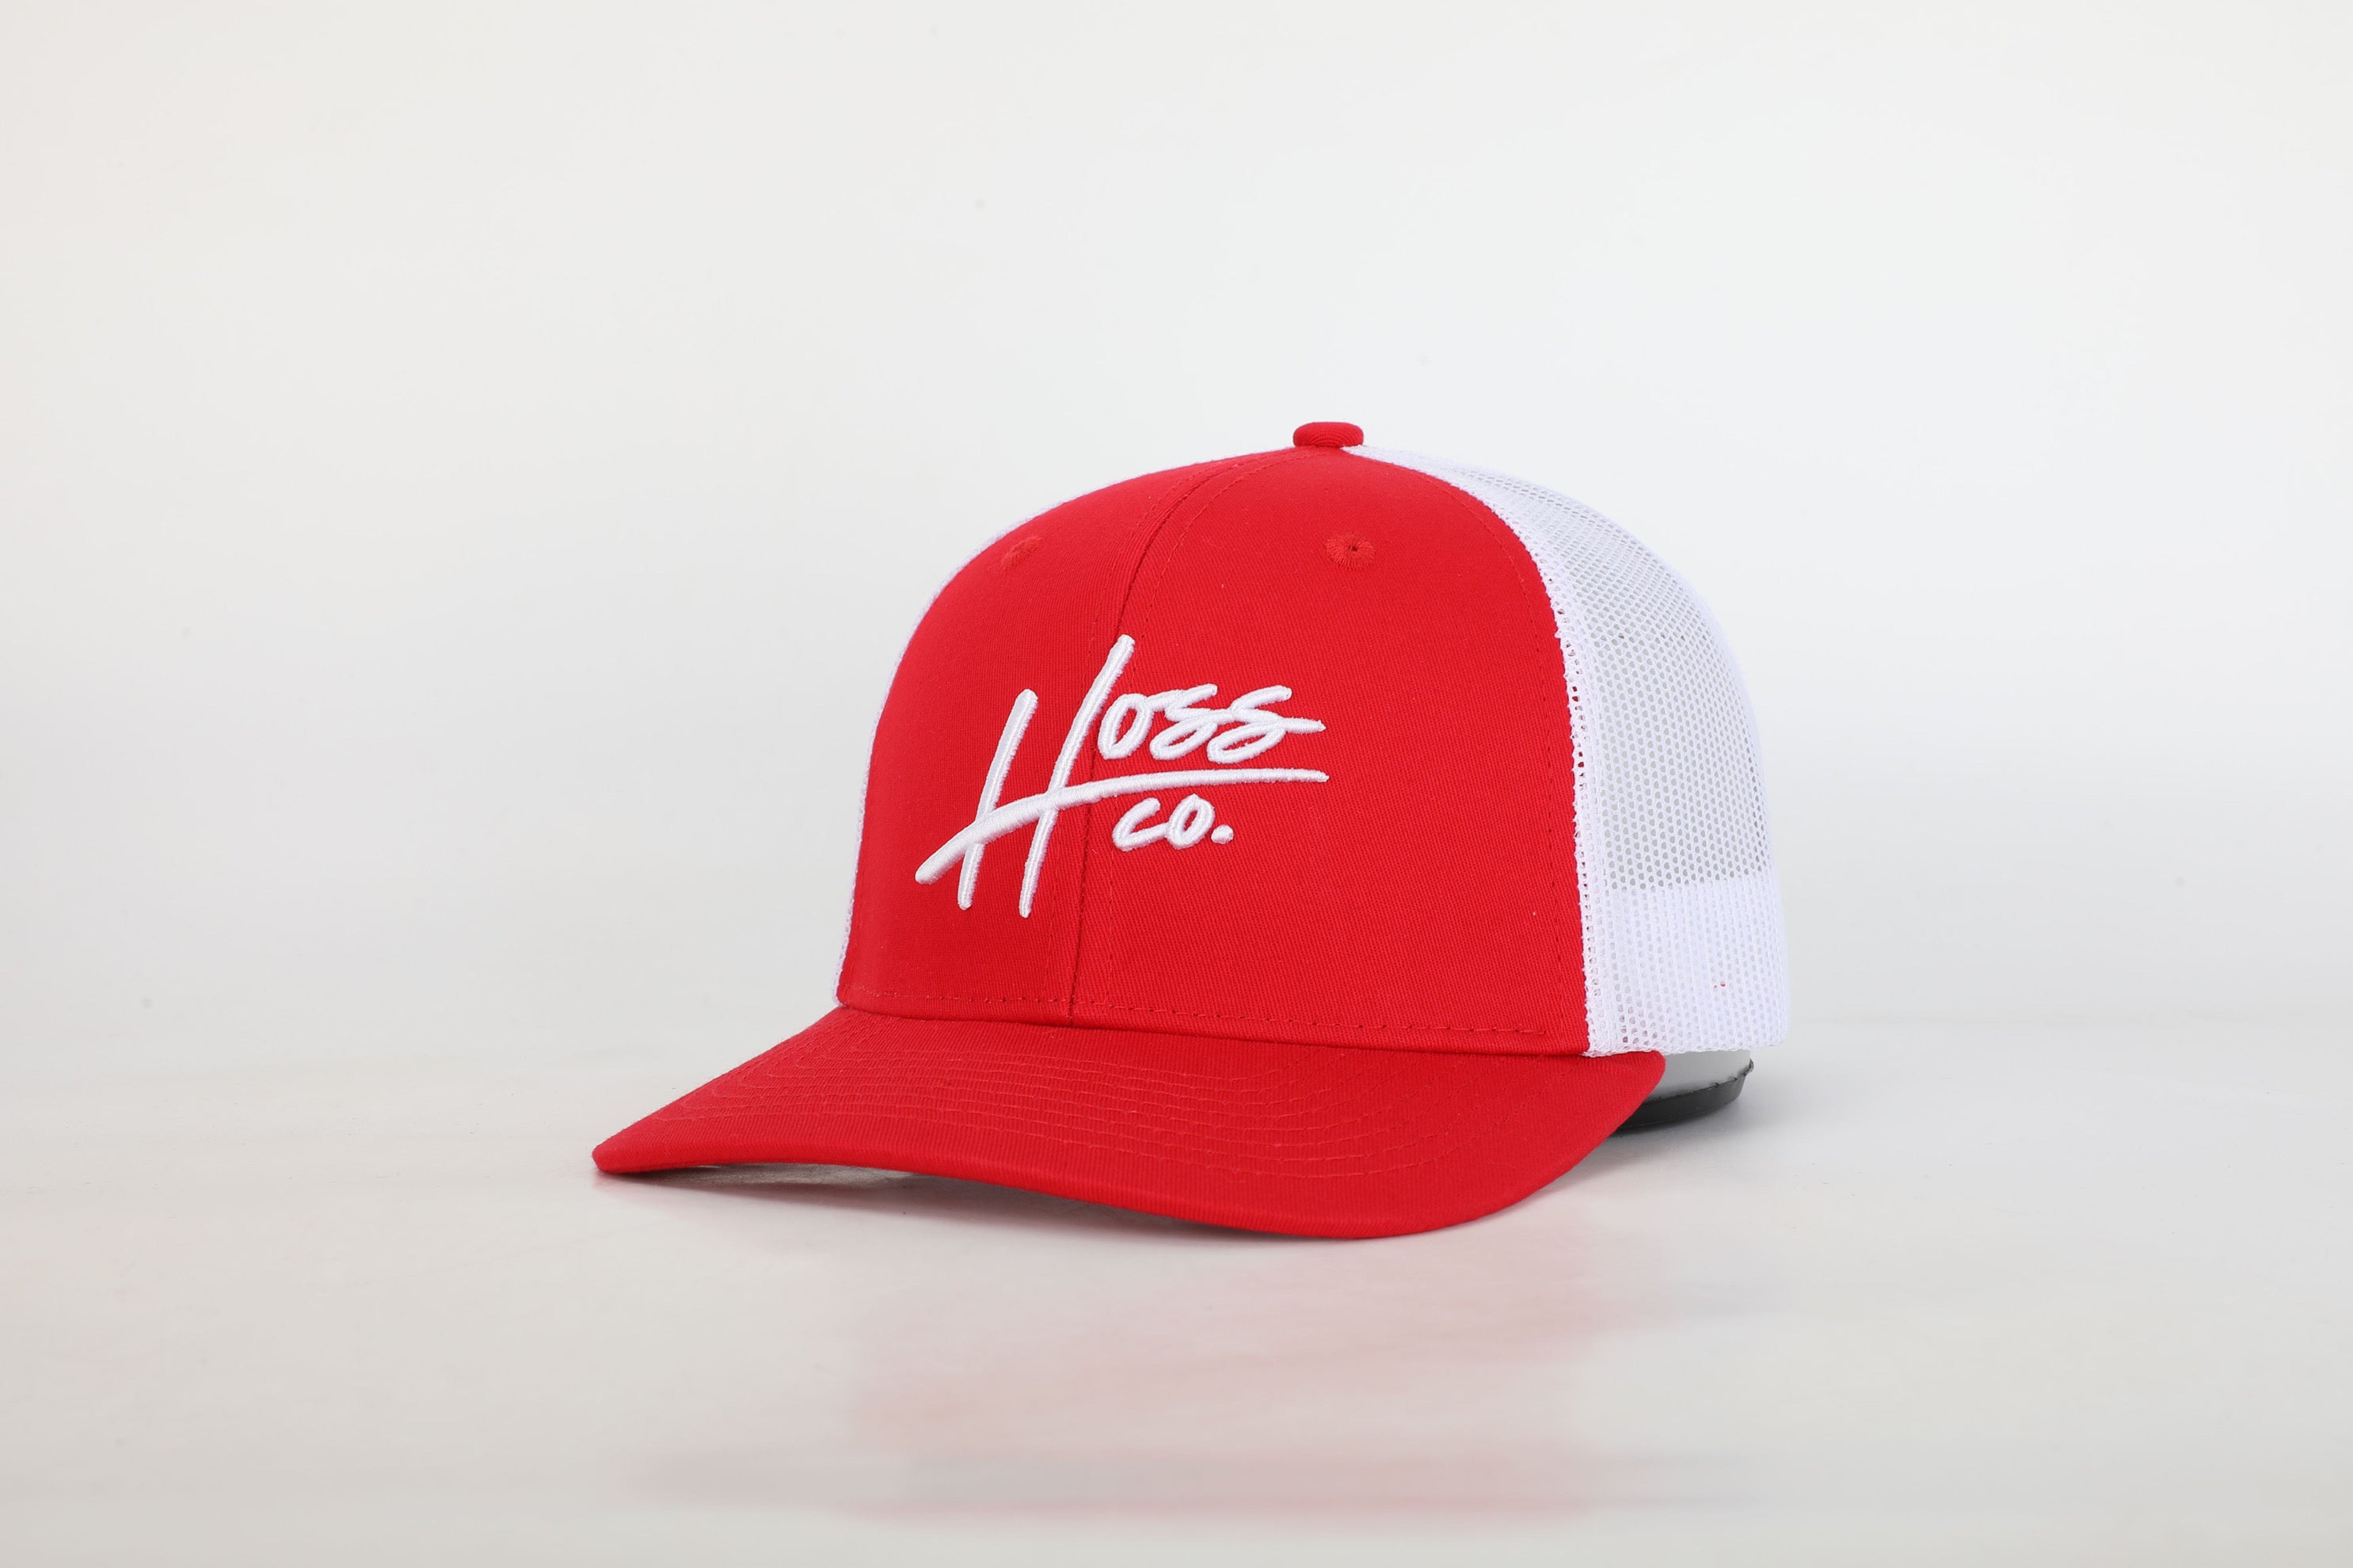 Hoss Red/White Trucker Hat